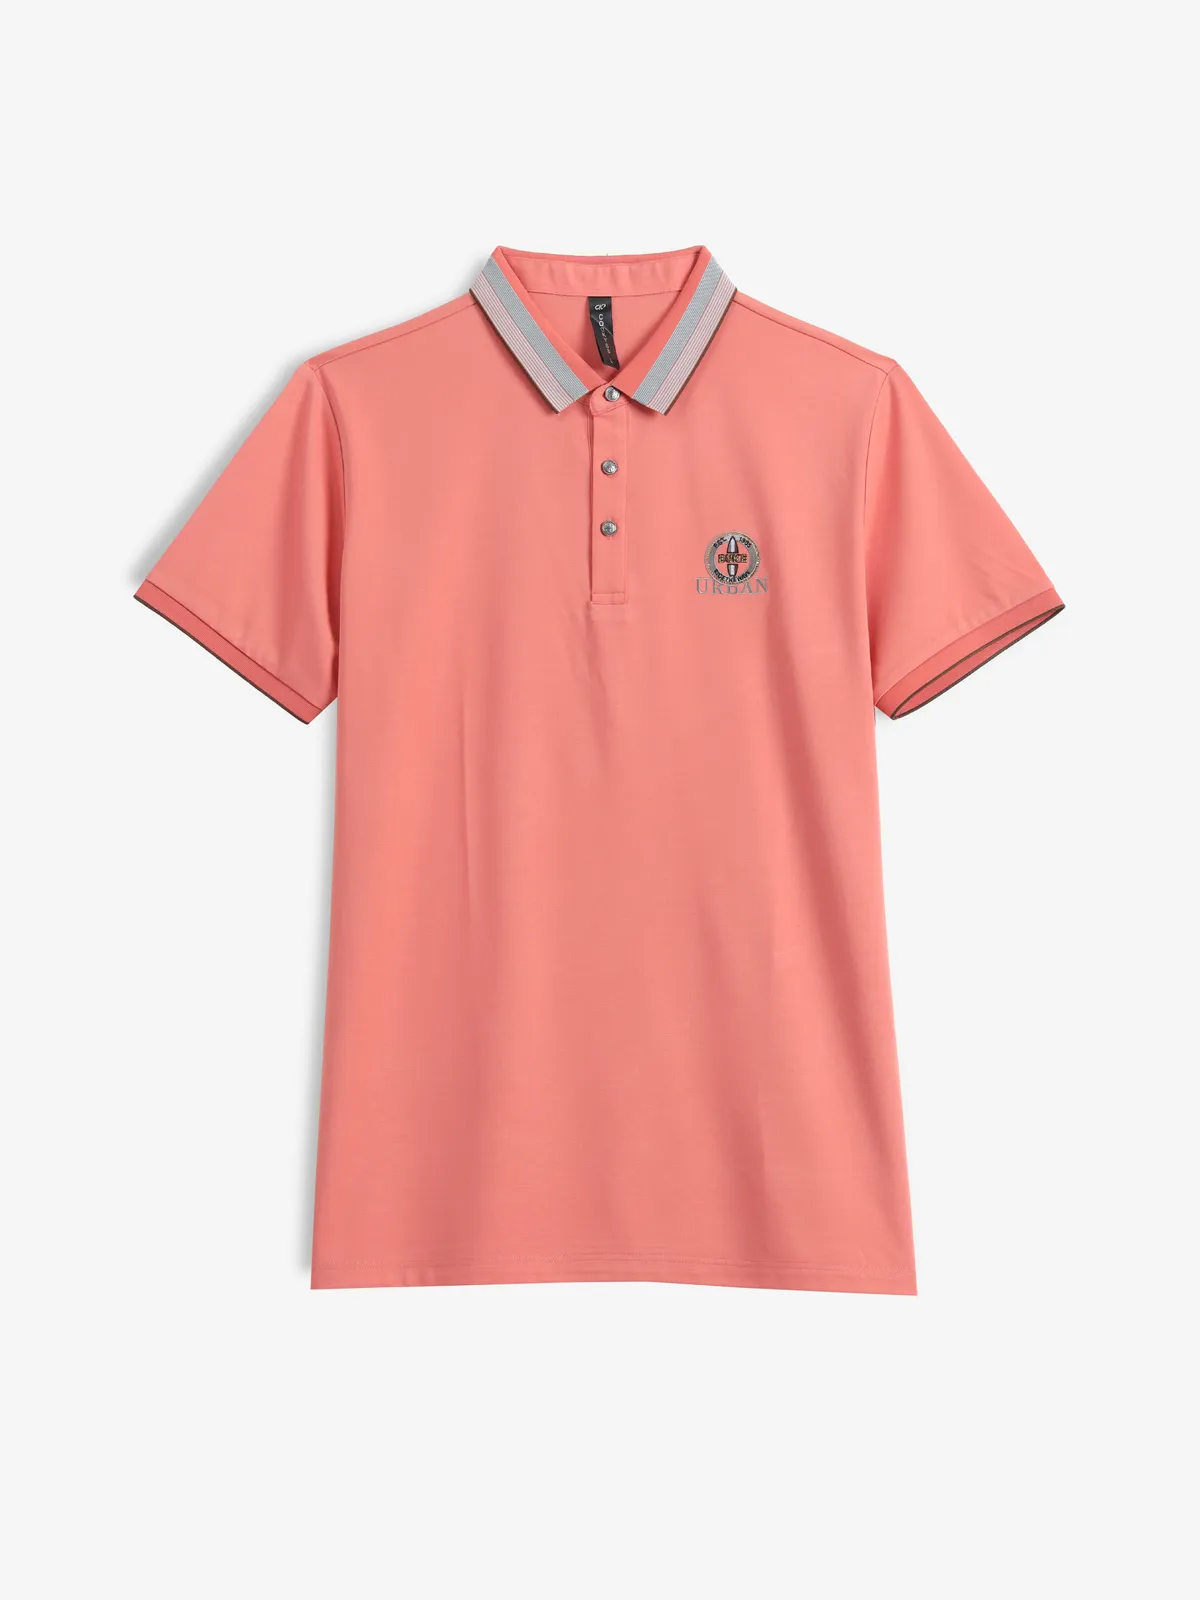 COOKYSS cotton orange plain casual t-shirt